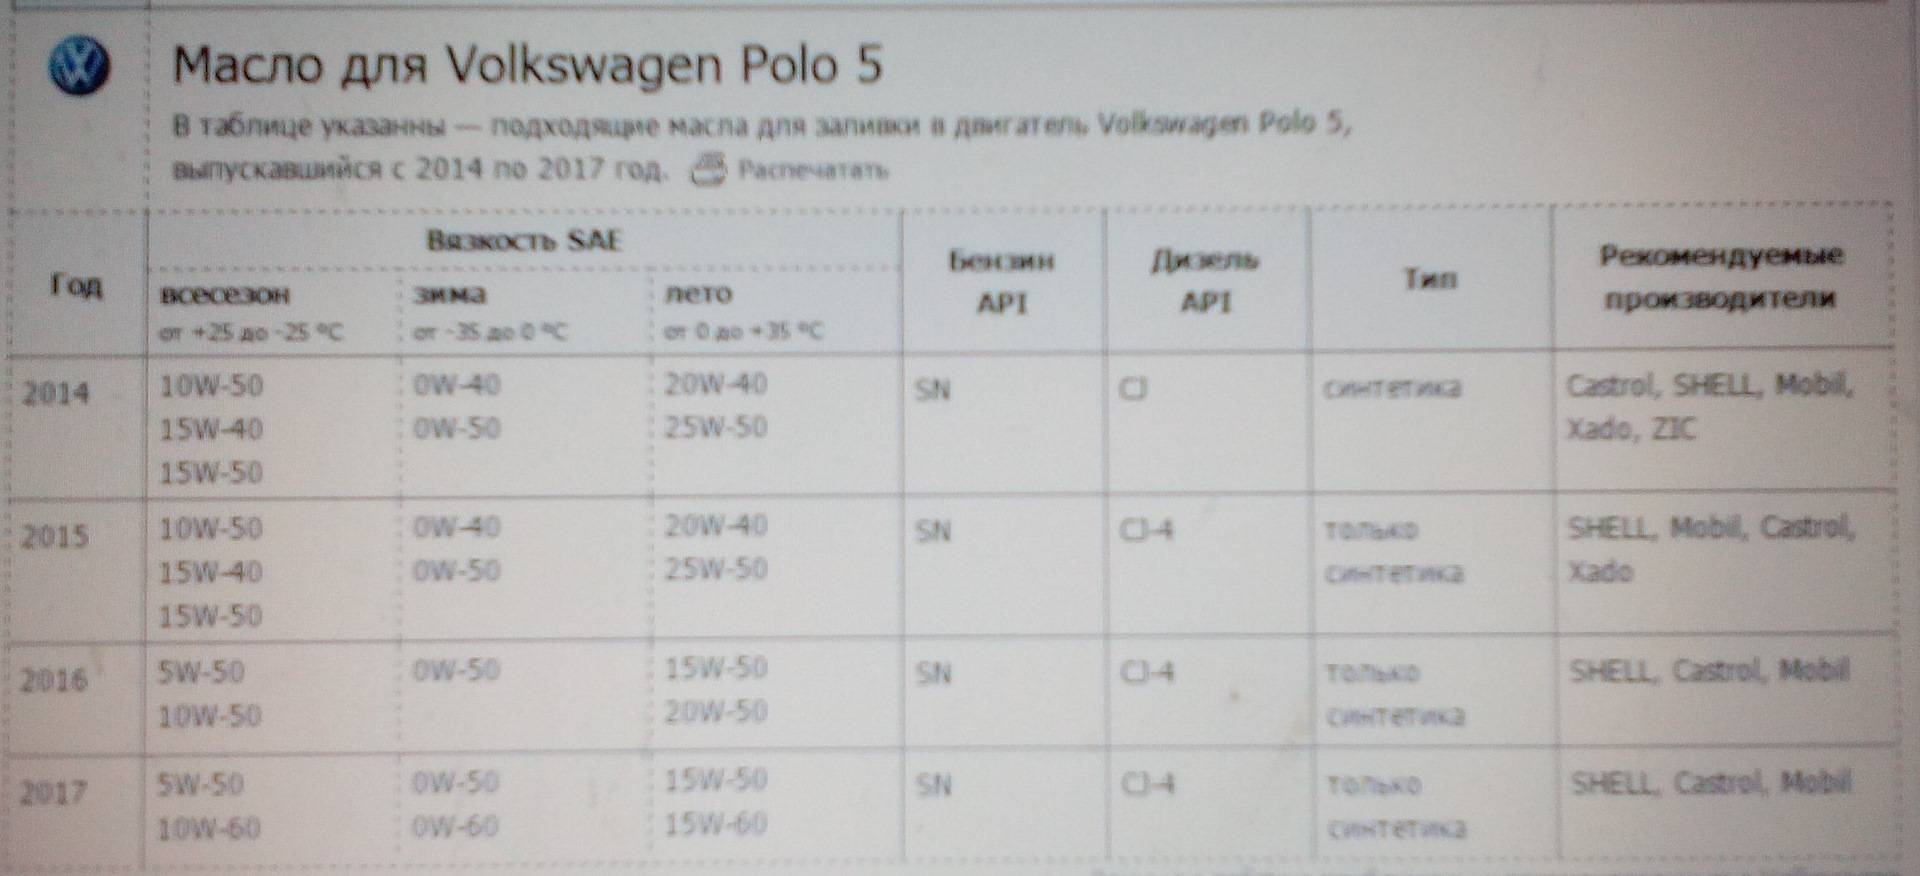 Объём масла в двигатель Фольксваген Поло седан 1.6 (сколько на замену)